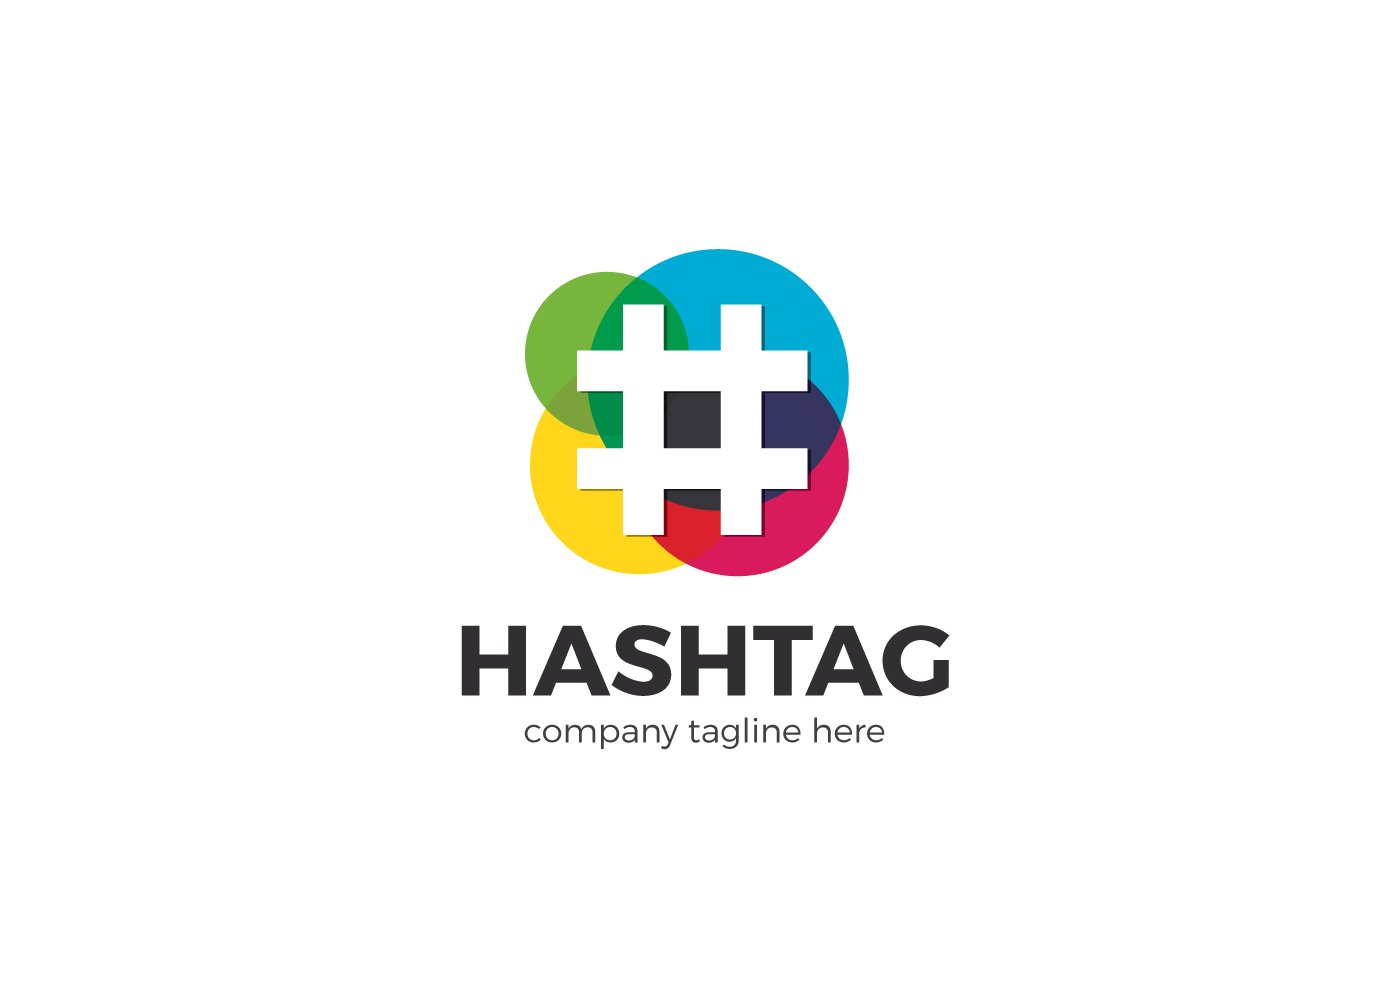 Các cách sử dụng hashtag cho doanh nghiệp.